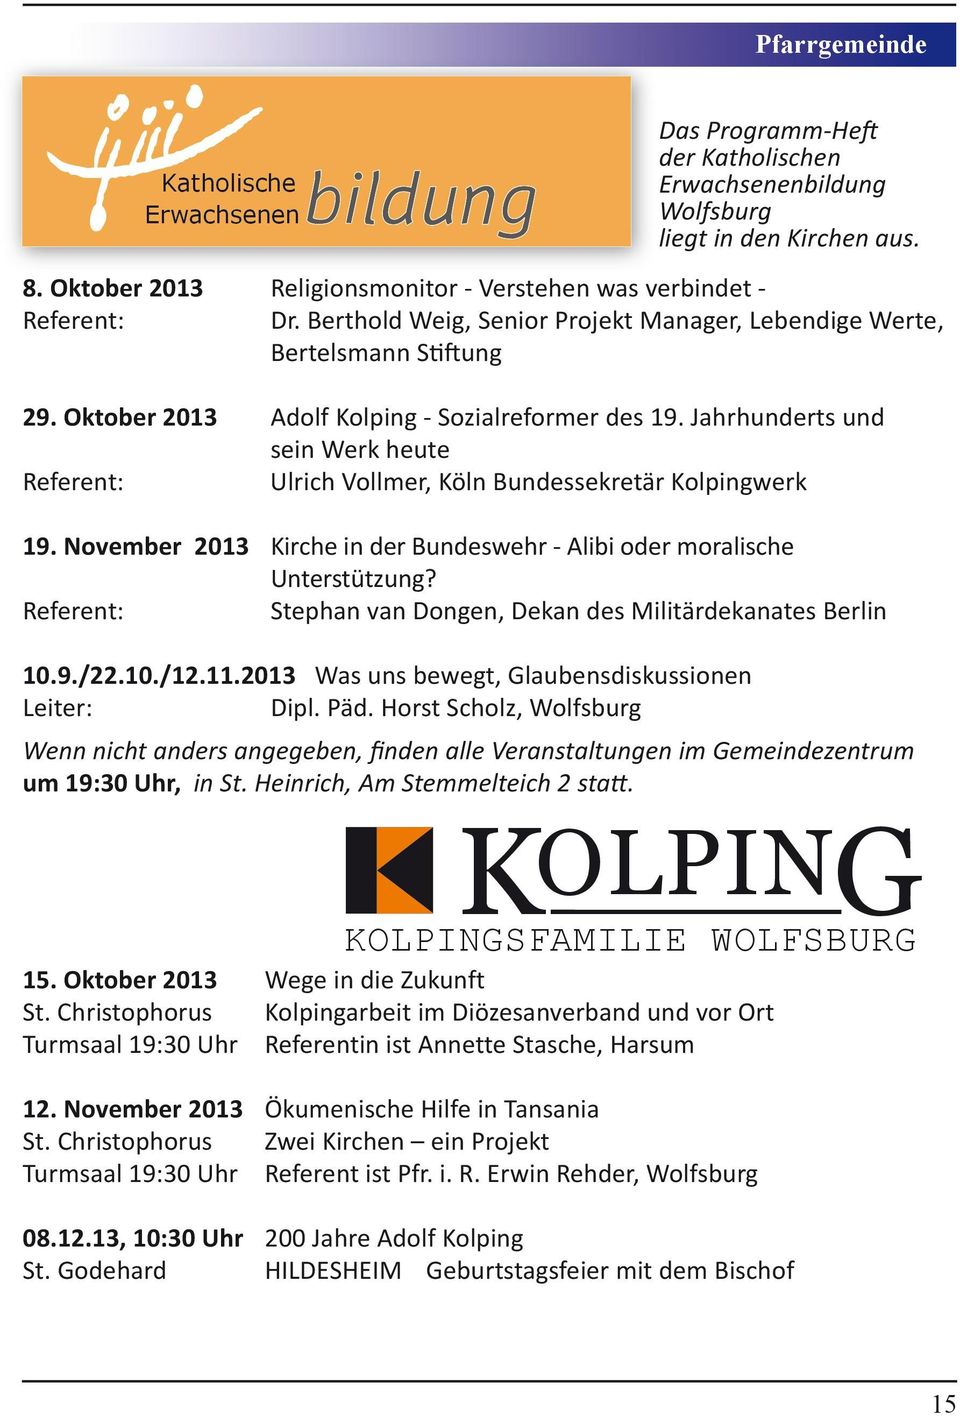 Jahrhunderts und sein Werk heute Referent: Ulrich Vollmer, Köln Bundessekretär Kolpingwerk 19. November 2013 Kirche in der Bundeswehr - Alibi oder moralische Unterstützung?